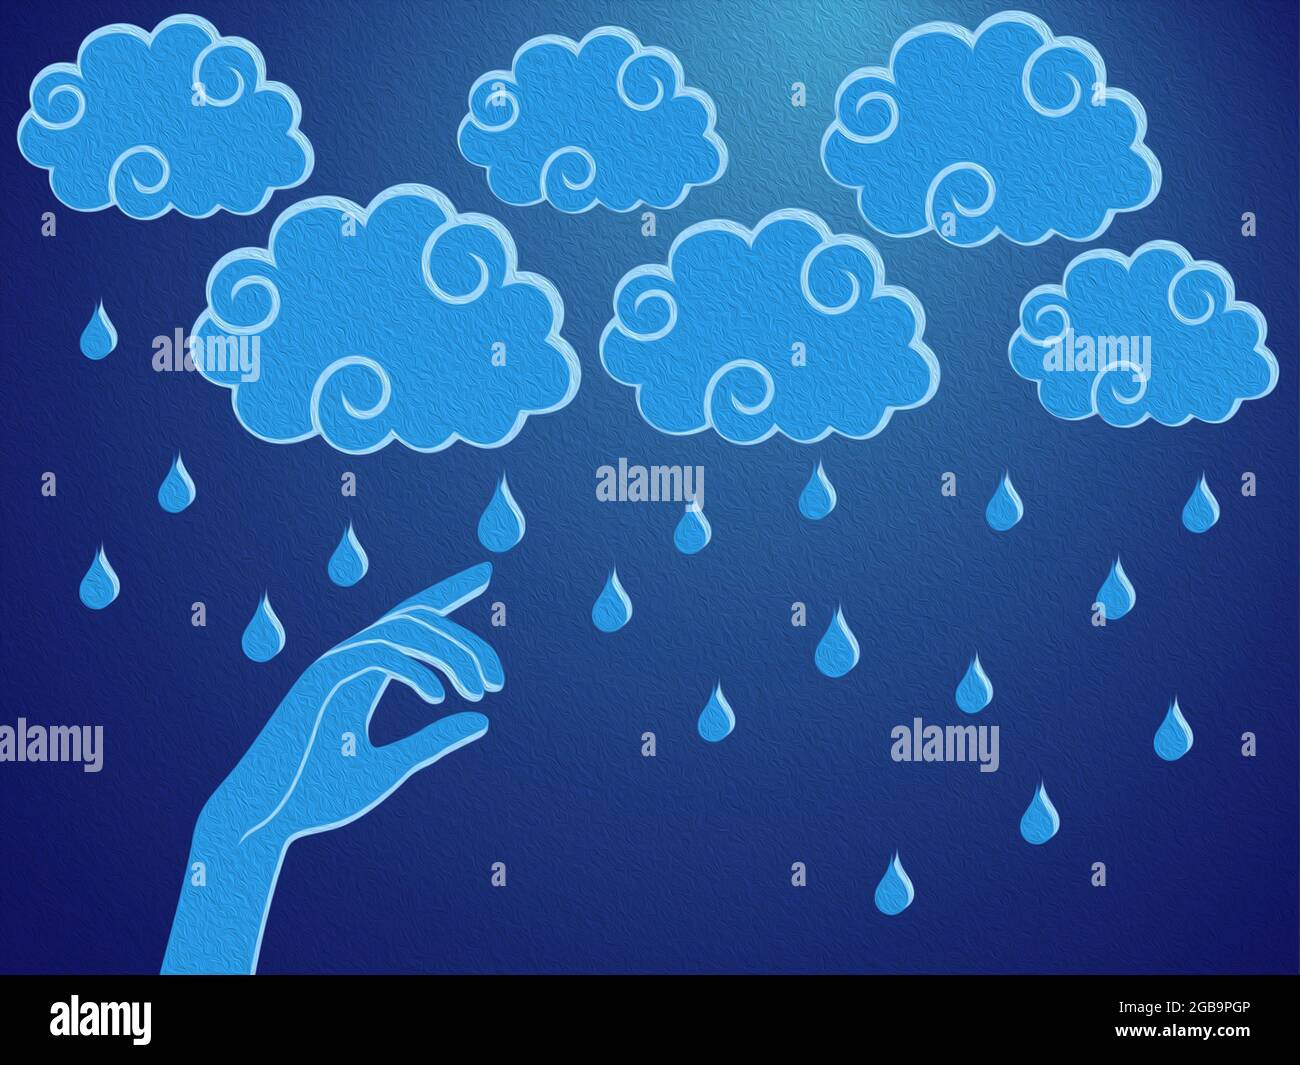 Menschliche Hand berührt einen regen Tröpfchen, stilisierte konzeptuelle bunte Illustration Stockfoto